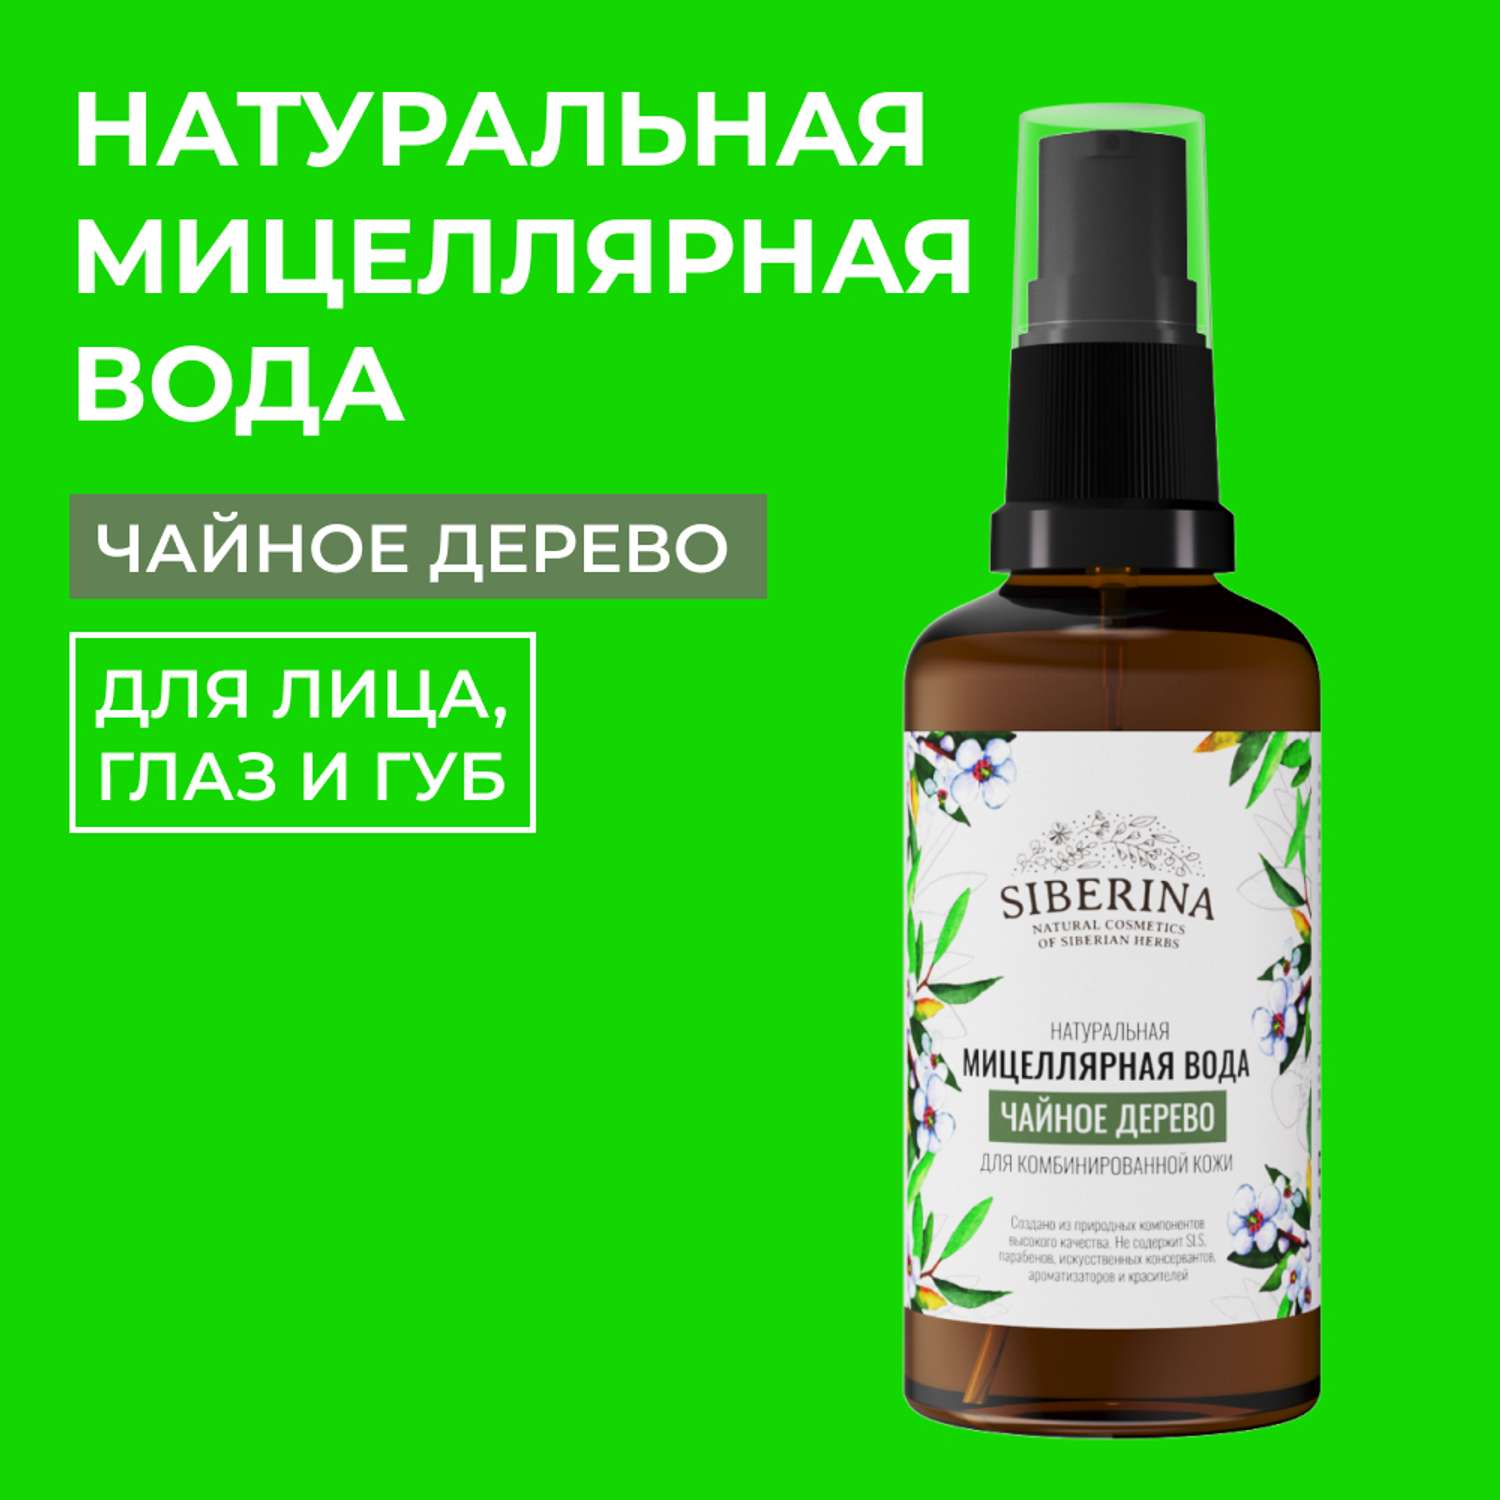 Мицеллярная вода Siberina натуральная «Чайное дерево» для проблемной кожи 50 мл - фото 1